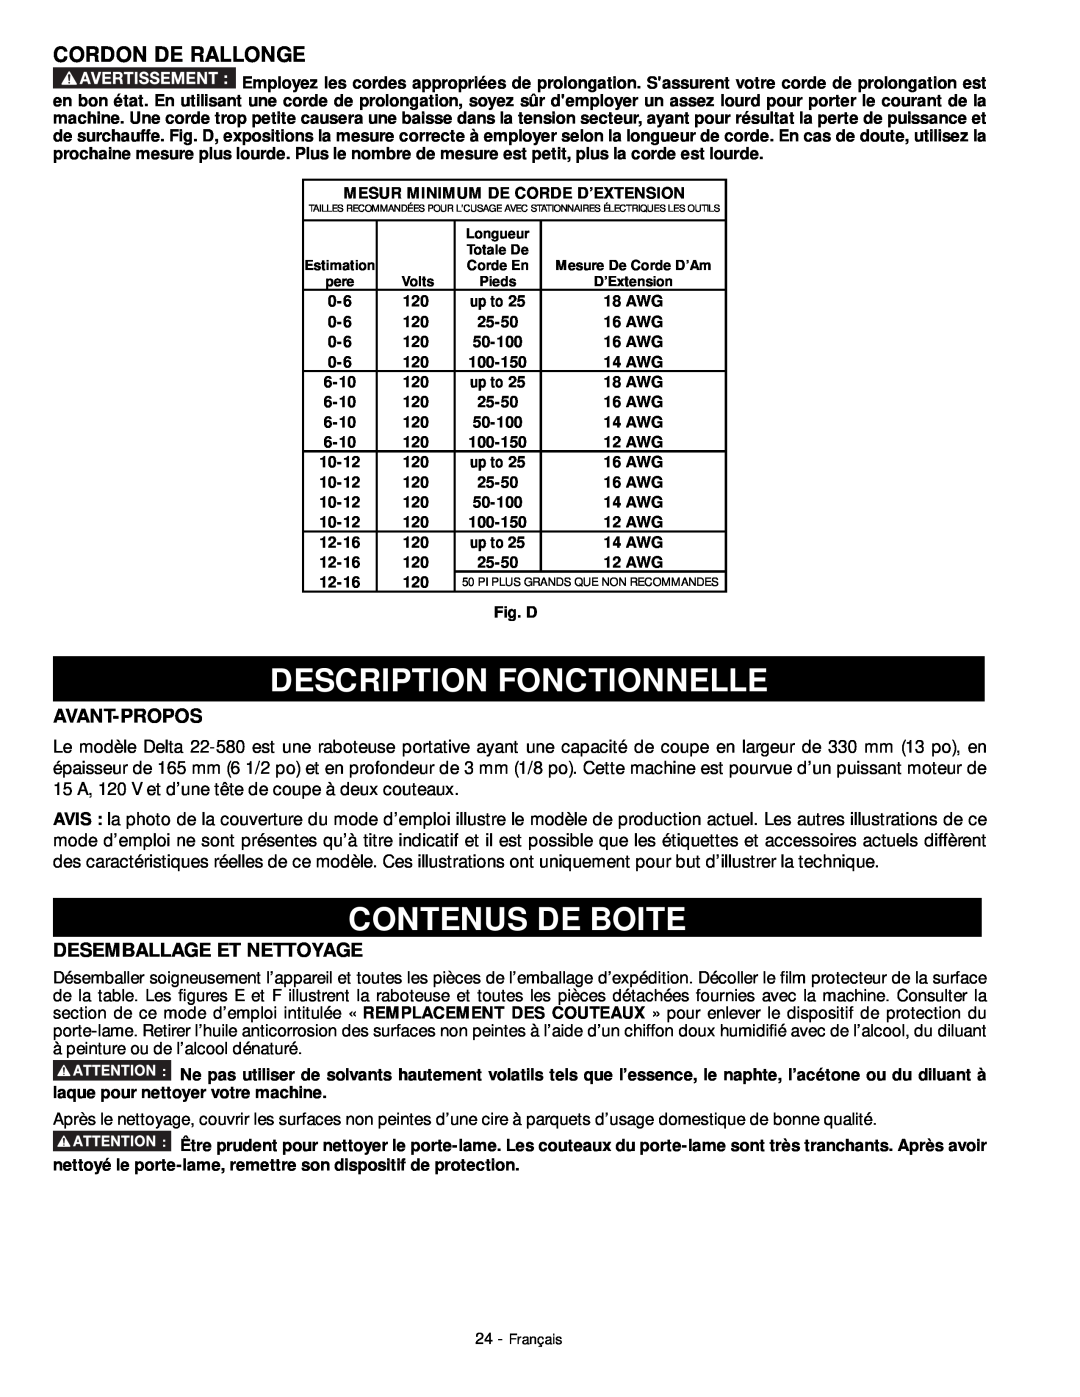 DeWalt 18657 Description Fonctionnelle, Contenus De Boite, Cordon De Rallonge, Avant-Propos, Desemballage Et Nettoyage 